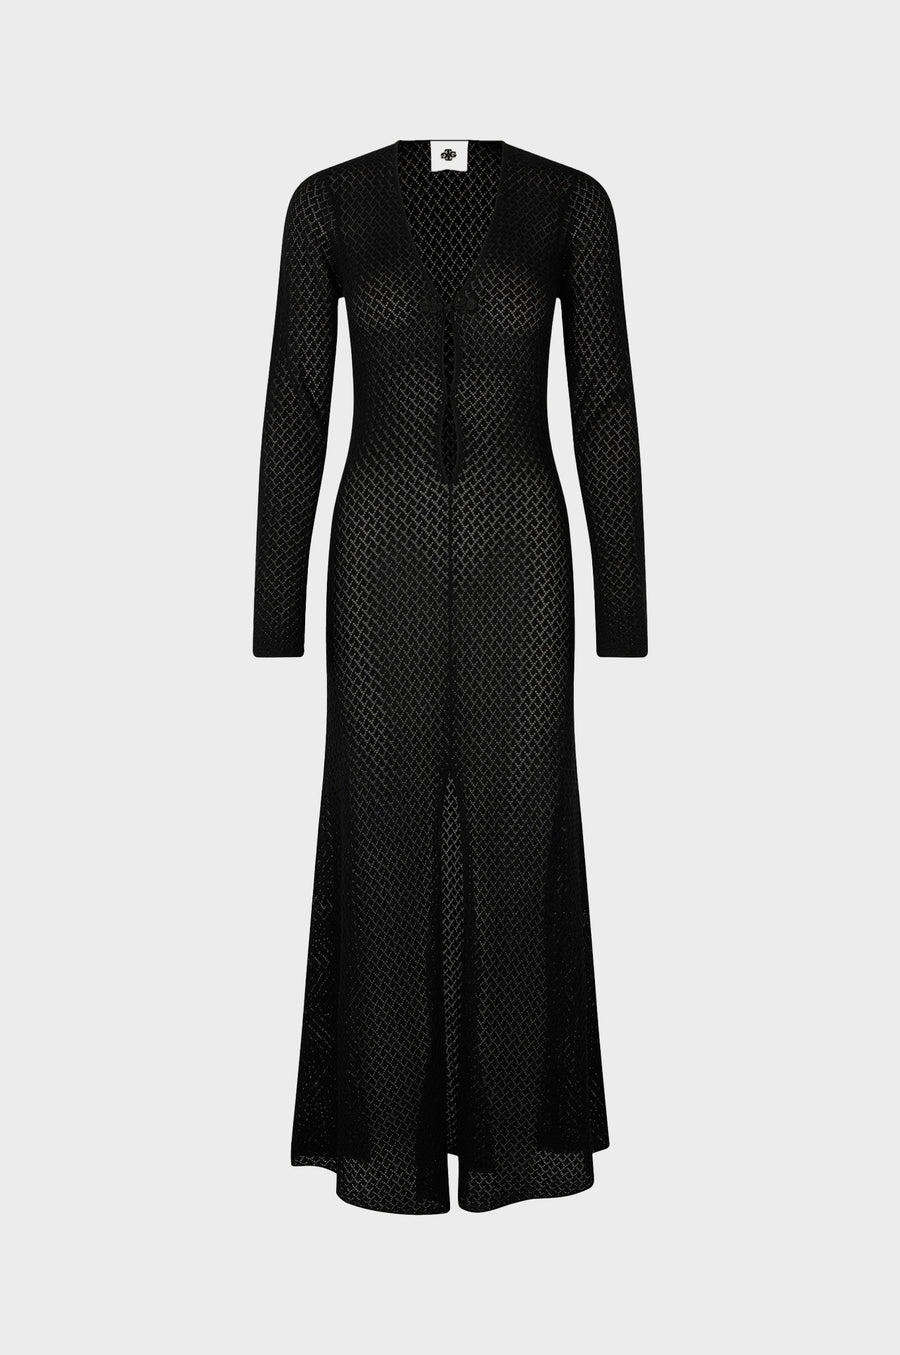 The Garment - Tanzania Dress  - Black